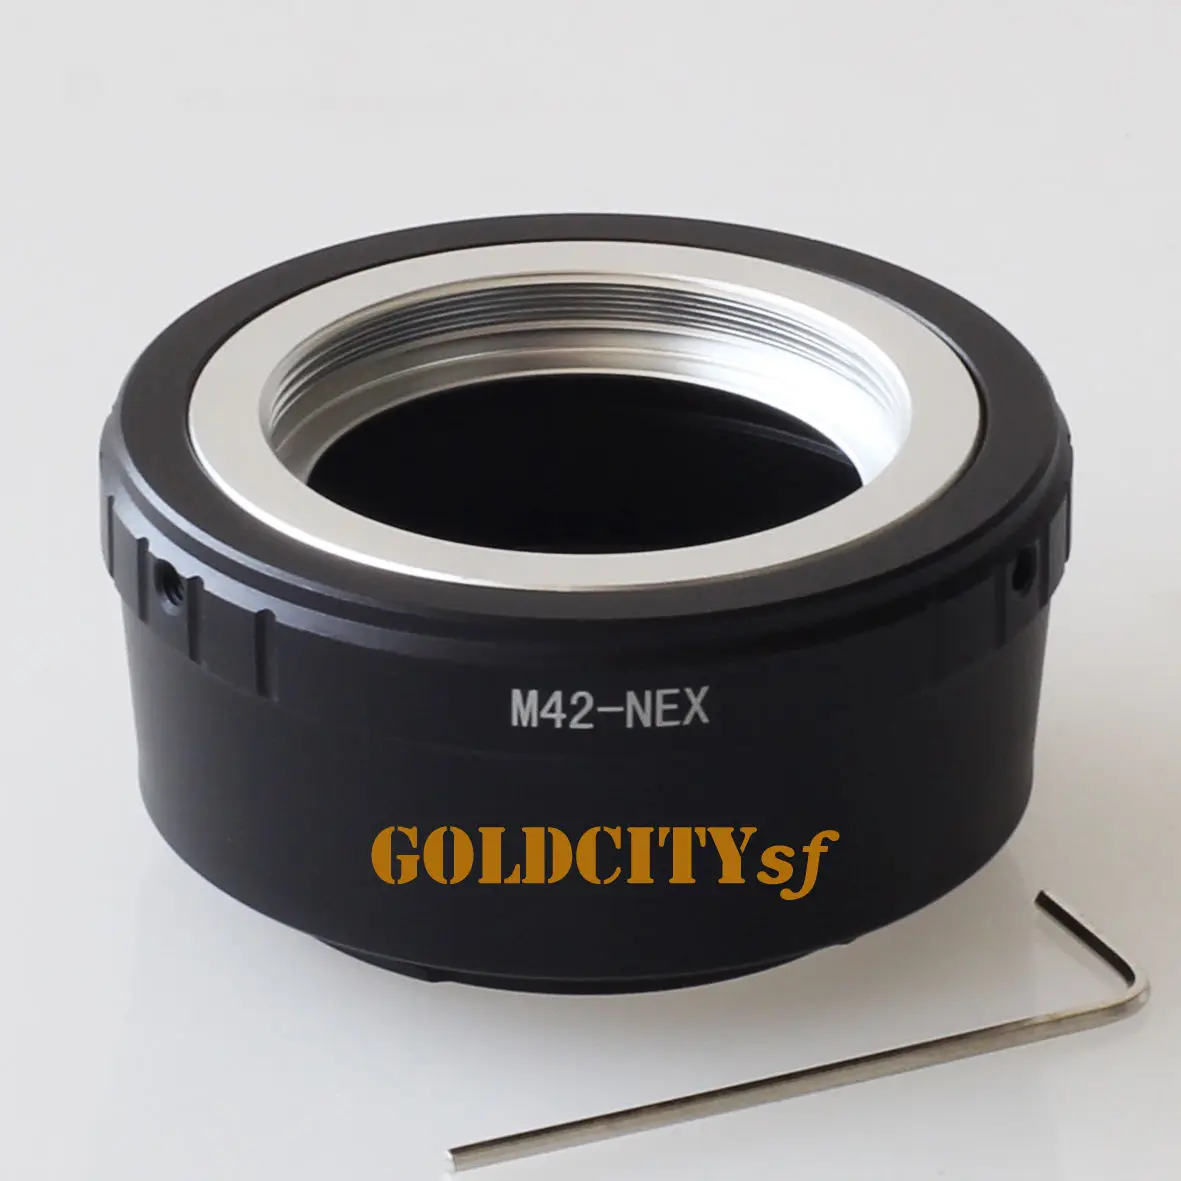 42 мм M42 объектив к креплению E NEX камера переходное кольцо для sony NEX-3/C3/5/5N/6/7/5 T A7 A7 я A7r A5100 A7s A3000 A5000 A6000